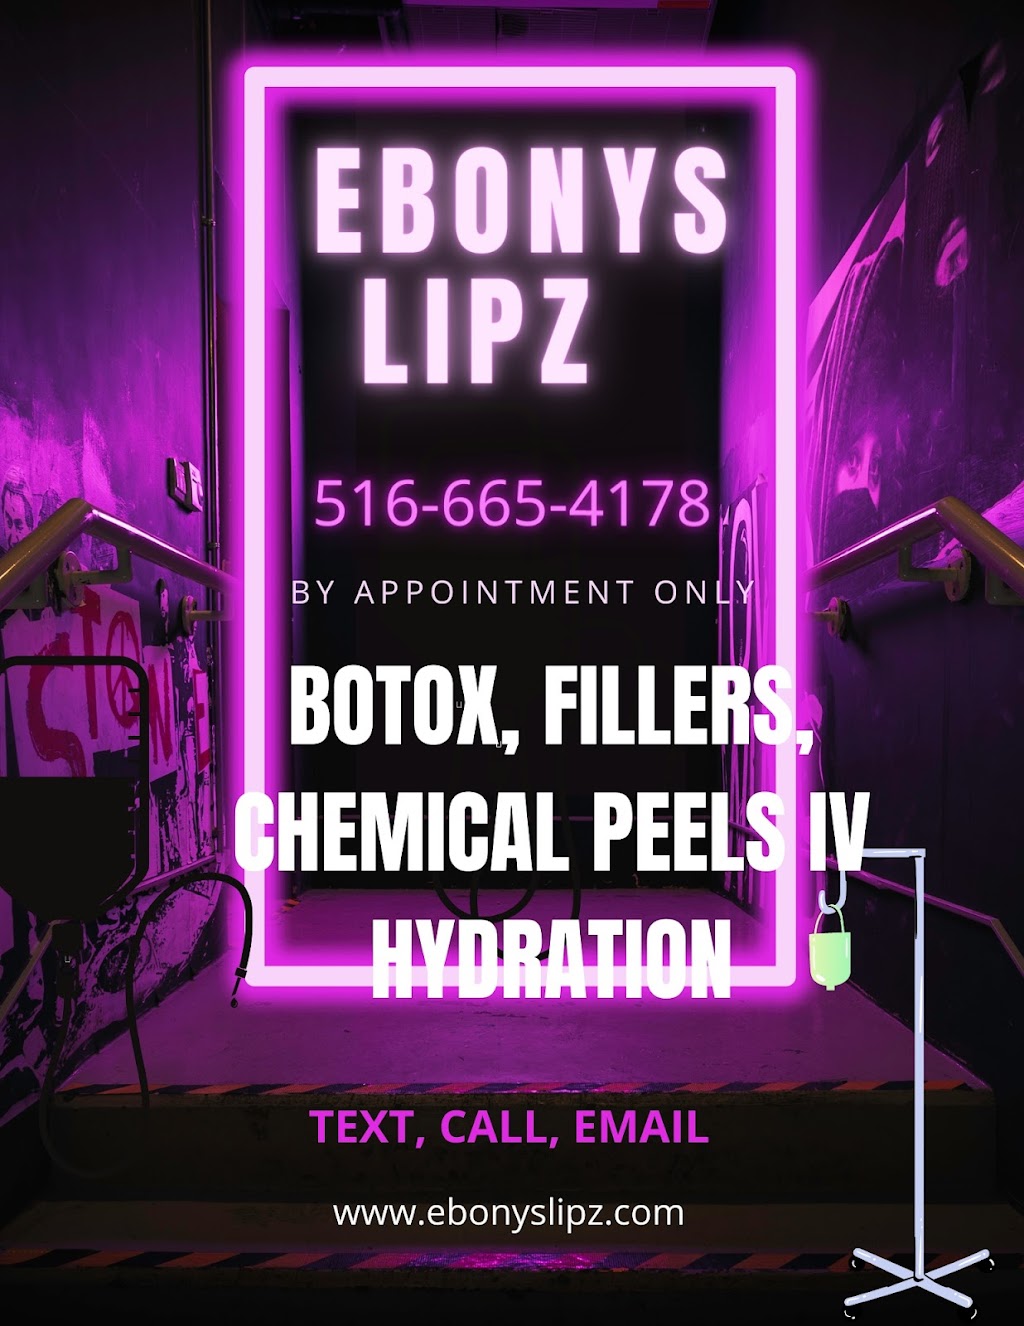 Ebonys Lipz LLC | 1959 NY-102 SUITE 404, East Meadow, NY 11554 | Phone: (516) 665-4178